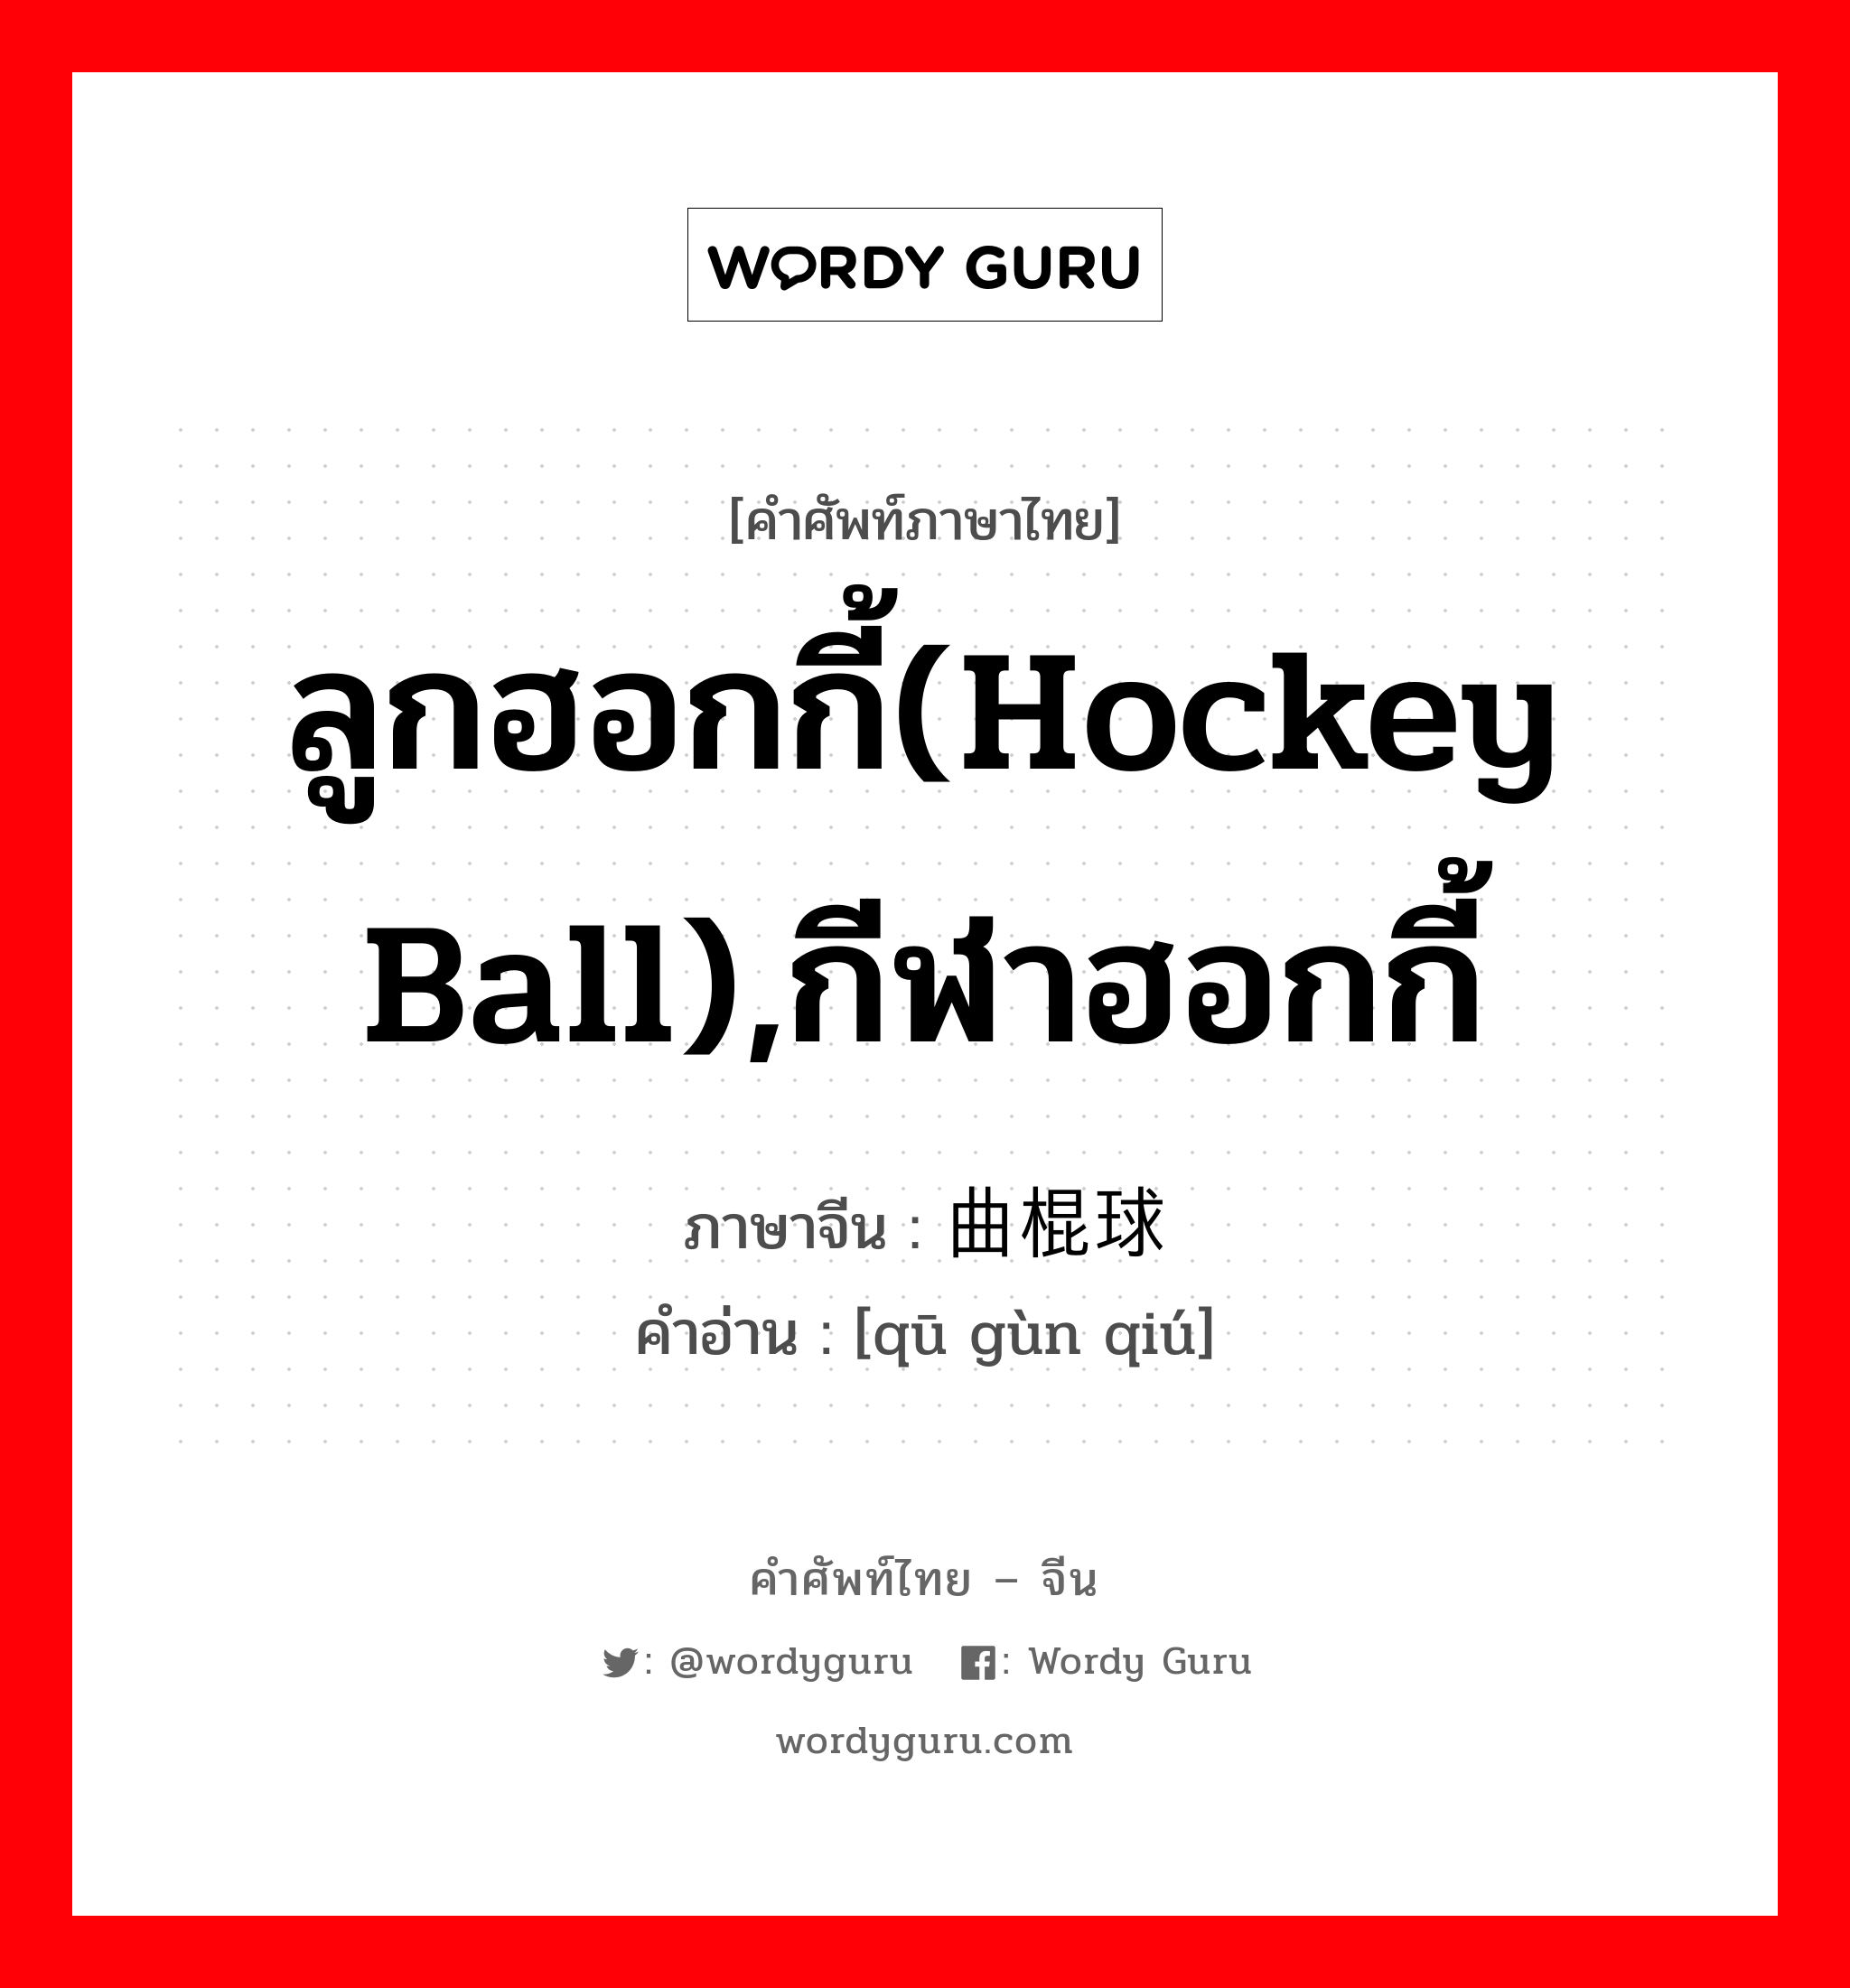 ลูกฮอกกี้(hockey ball),กีฬาฮอกกี้ ภาษาจีนคืออะไร, คำศัพท์ภาษาไทย - จีน ลูกฮอกกี้(hockey ball),กีฬาฮอกกี้ ภาษาจีน 曲棍球 คำอ่าน [qū gùn qiú]